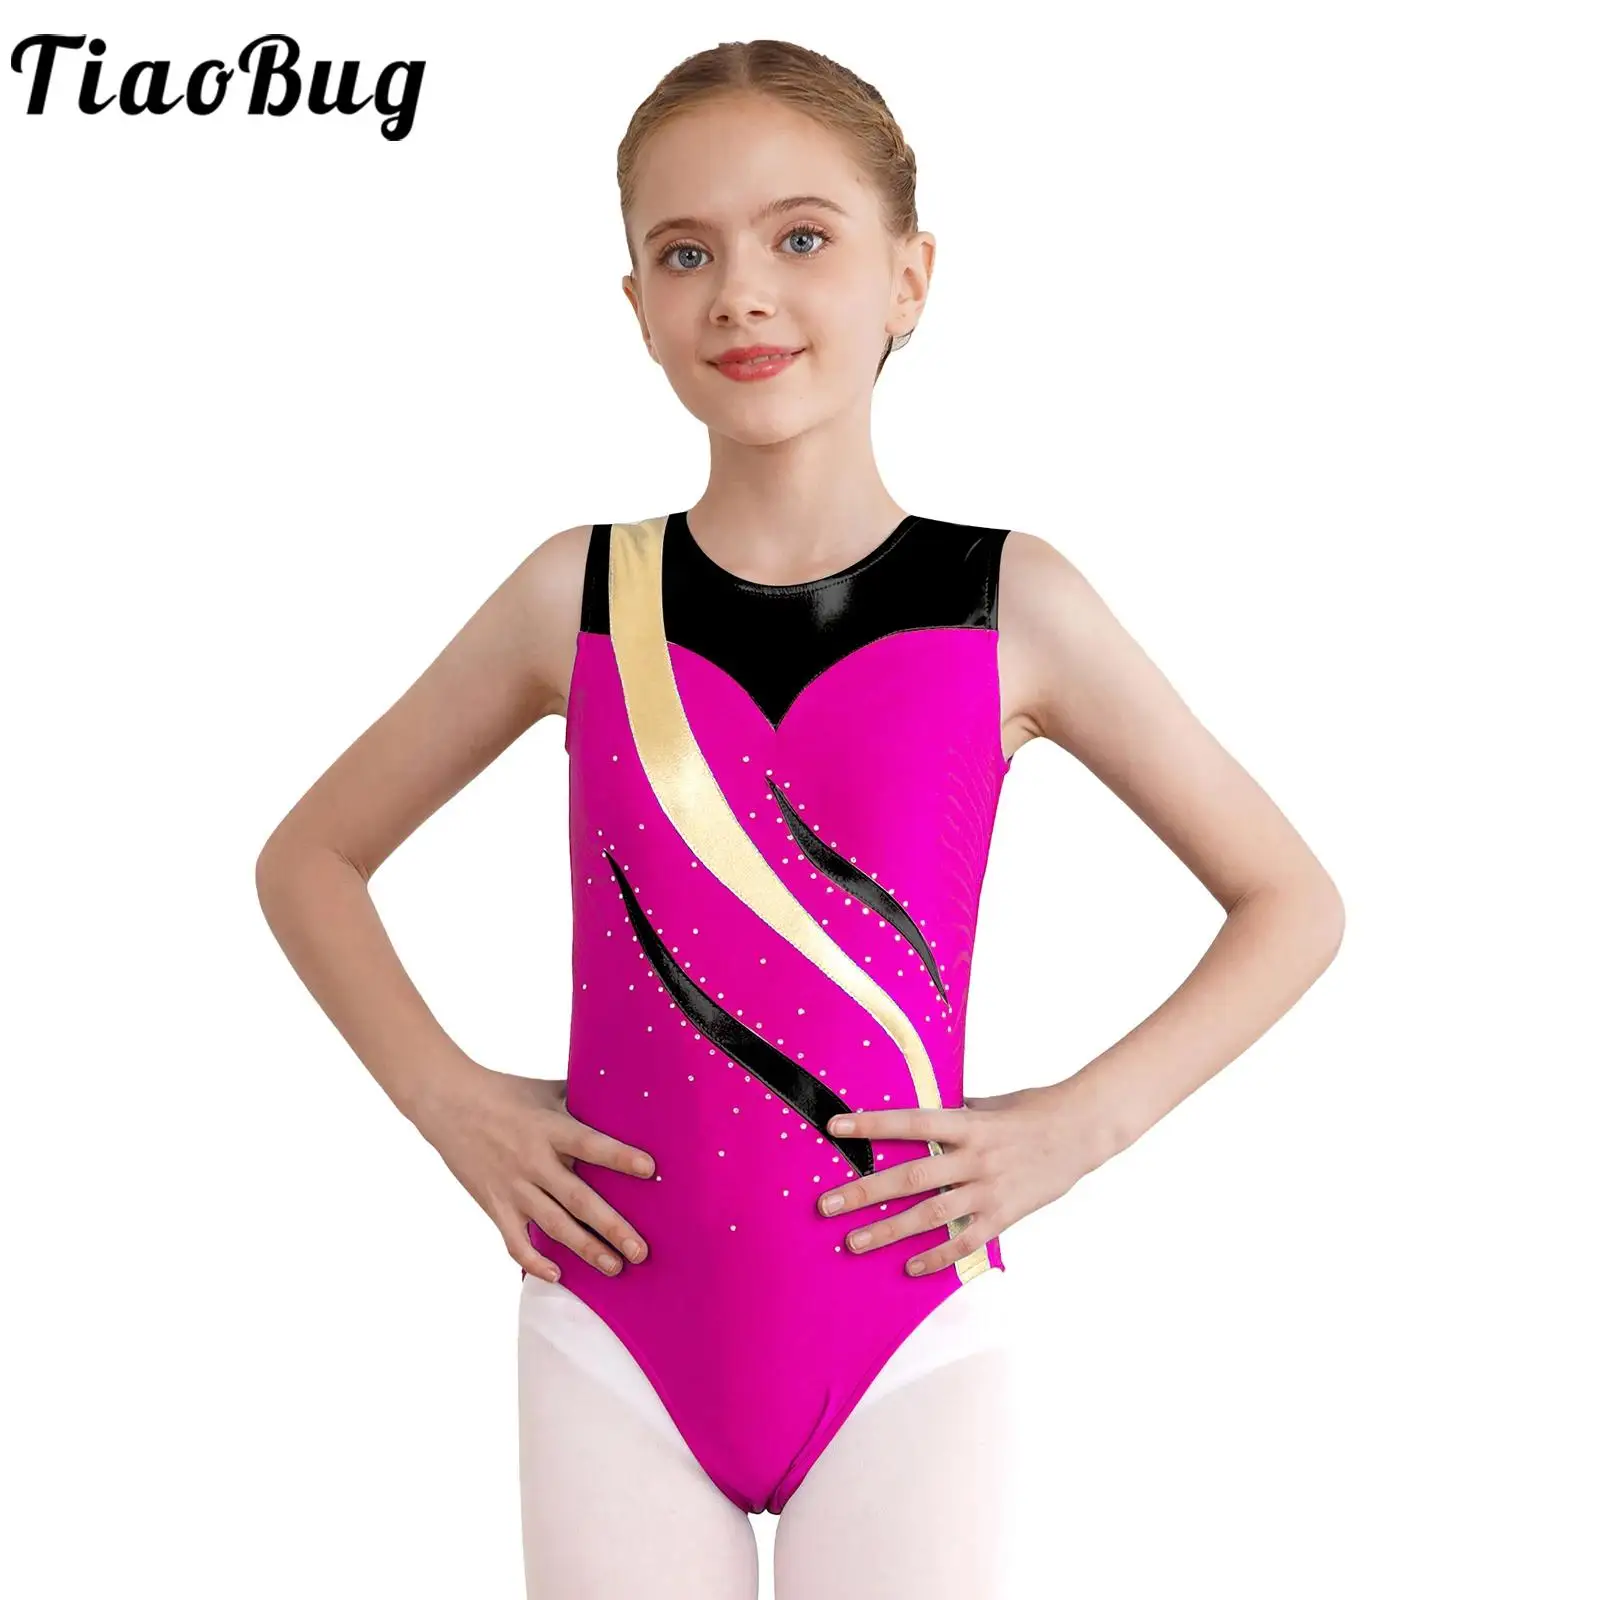 

Трико TiaoBug для девочек от 4 до 14 лет, костюм для художественной гимнастики, костюм для выступления, боди без рукавов с вырезом на спине